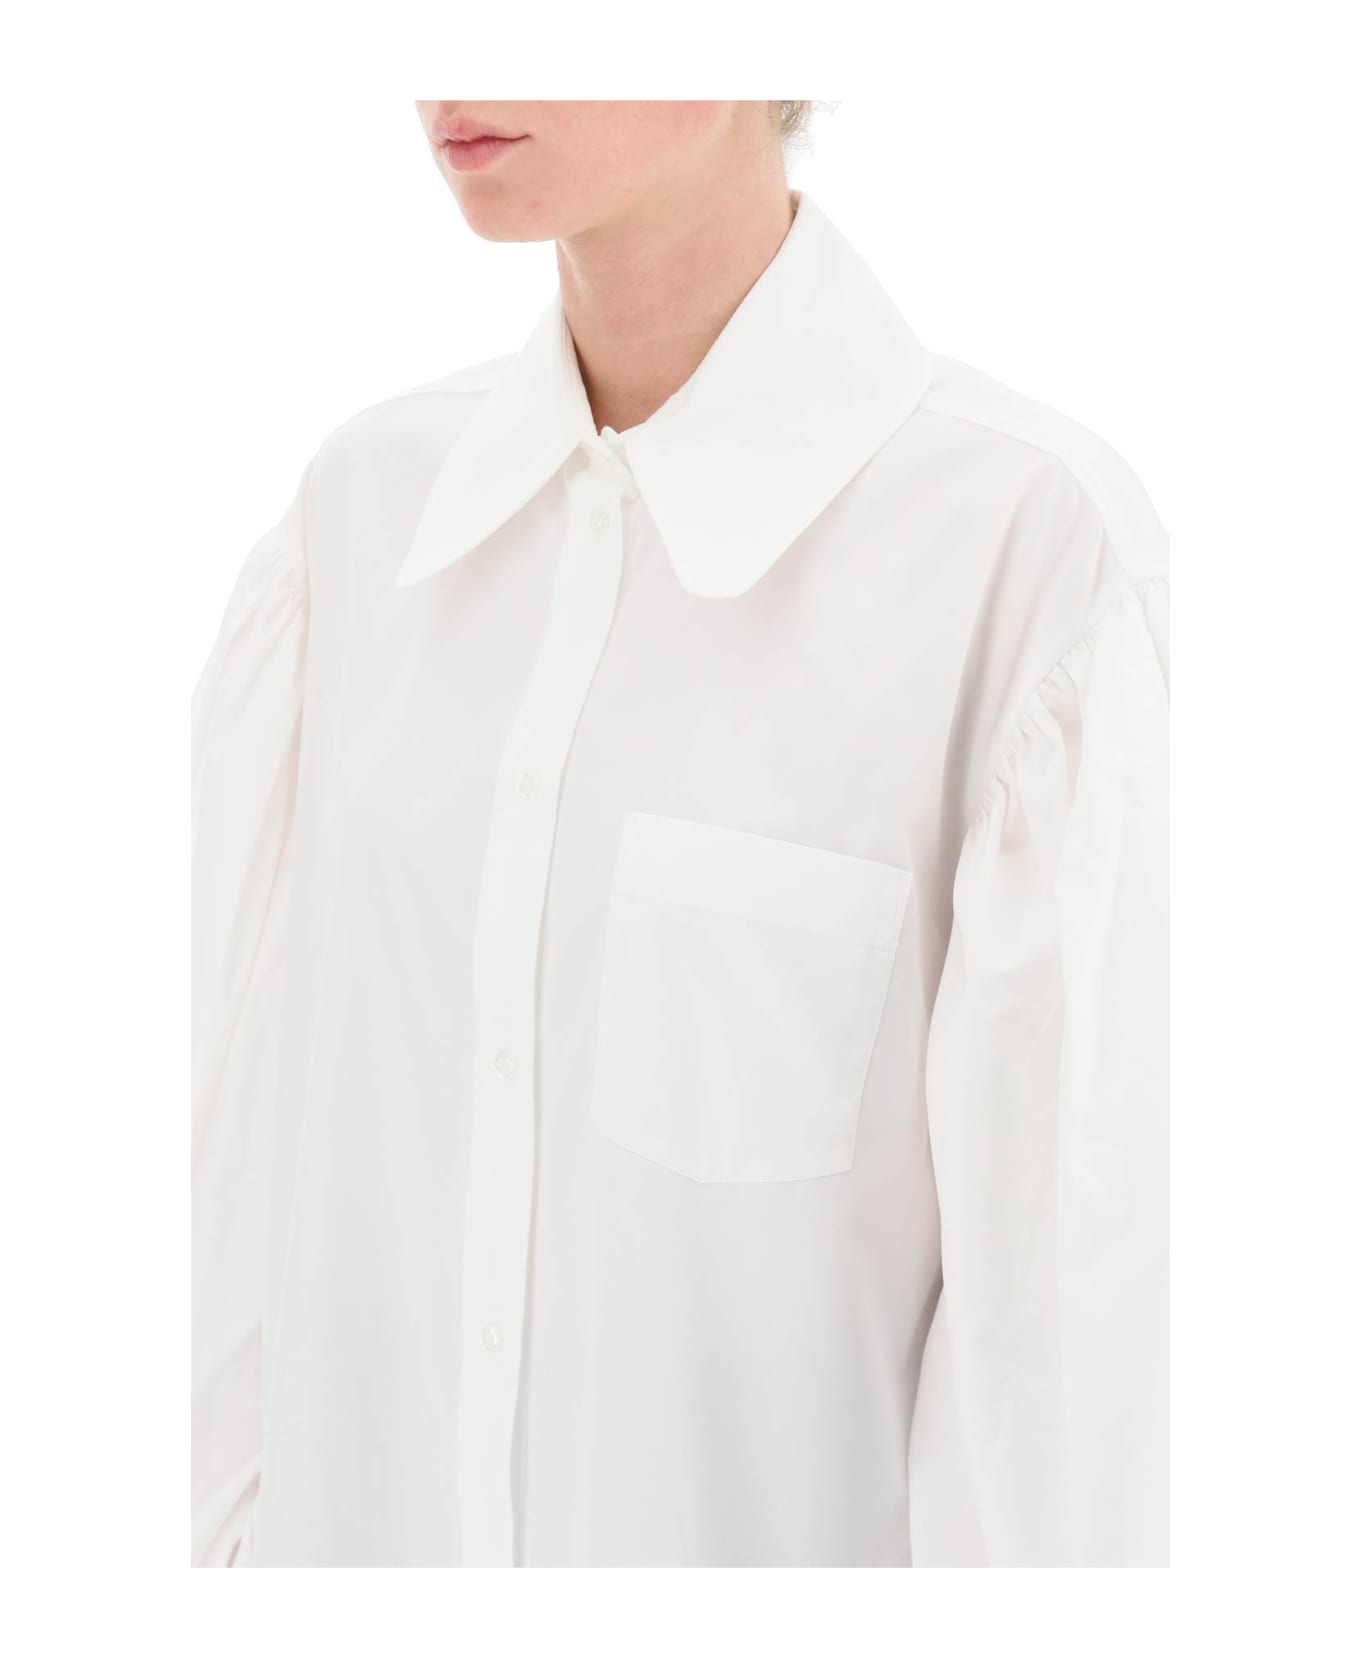 Simone Rocha Oversized Poplin Shirt With Puff Sleeves - WHITE (White)